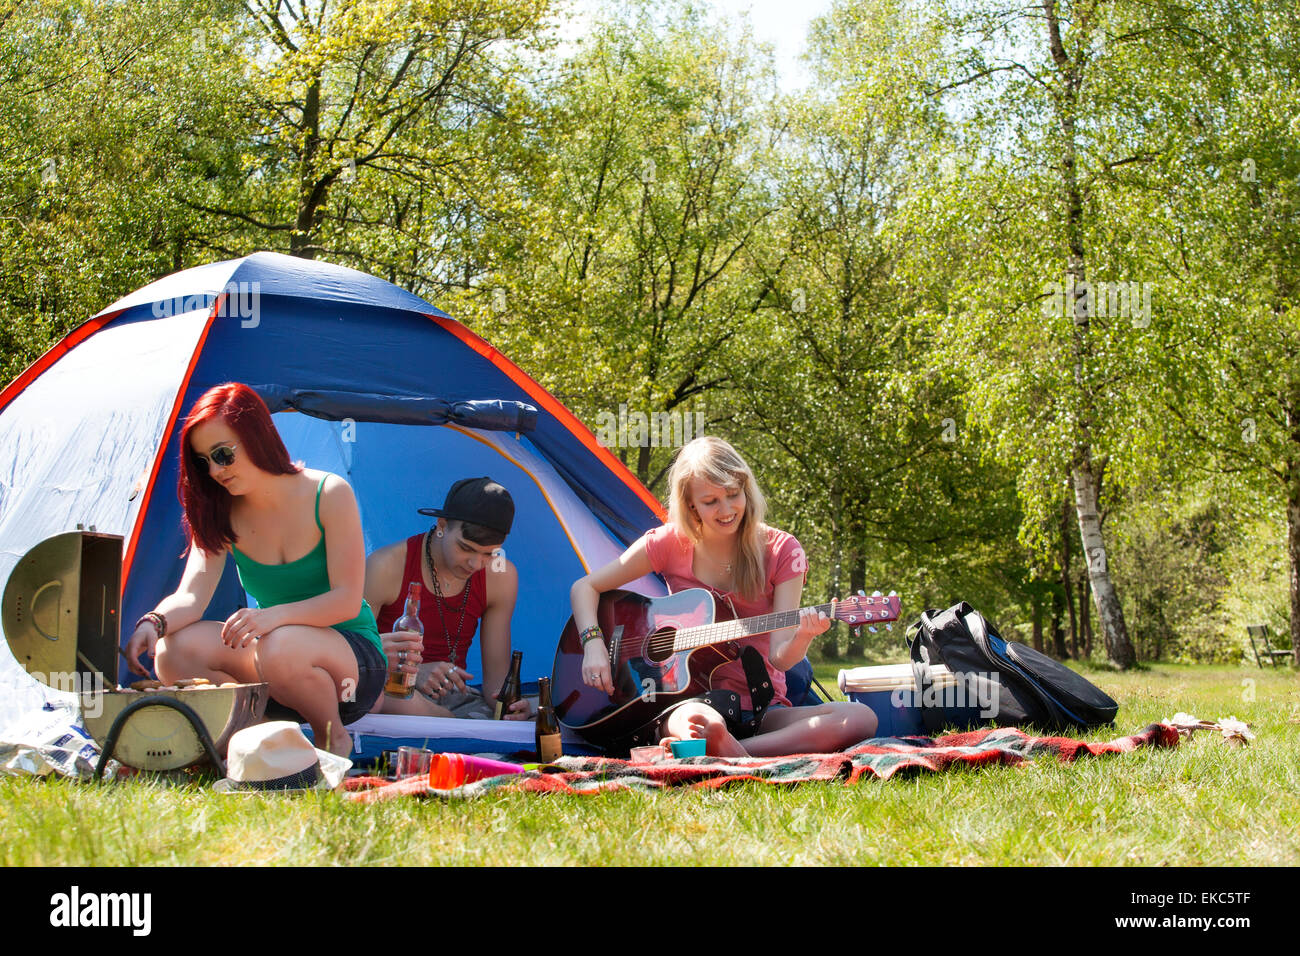 Les jeunes adolescents ayant un temps agréable sur le camping Banque D'Images